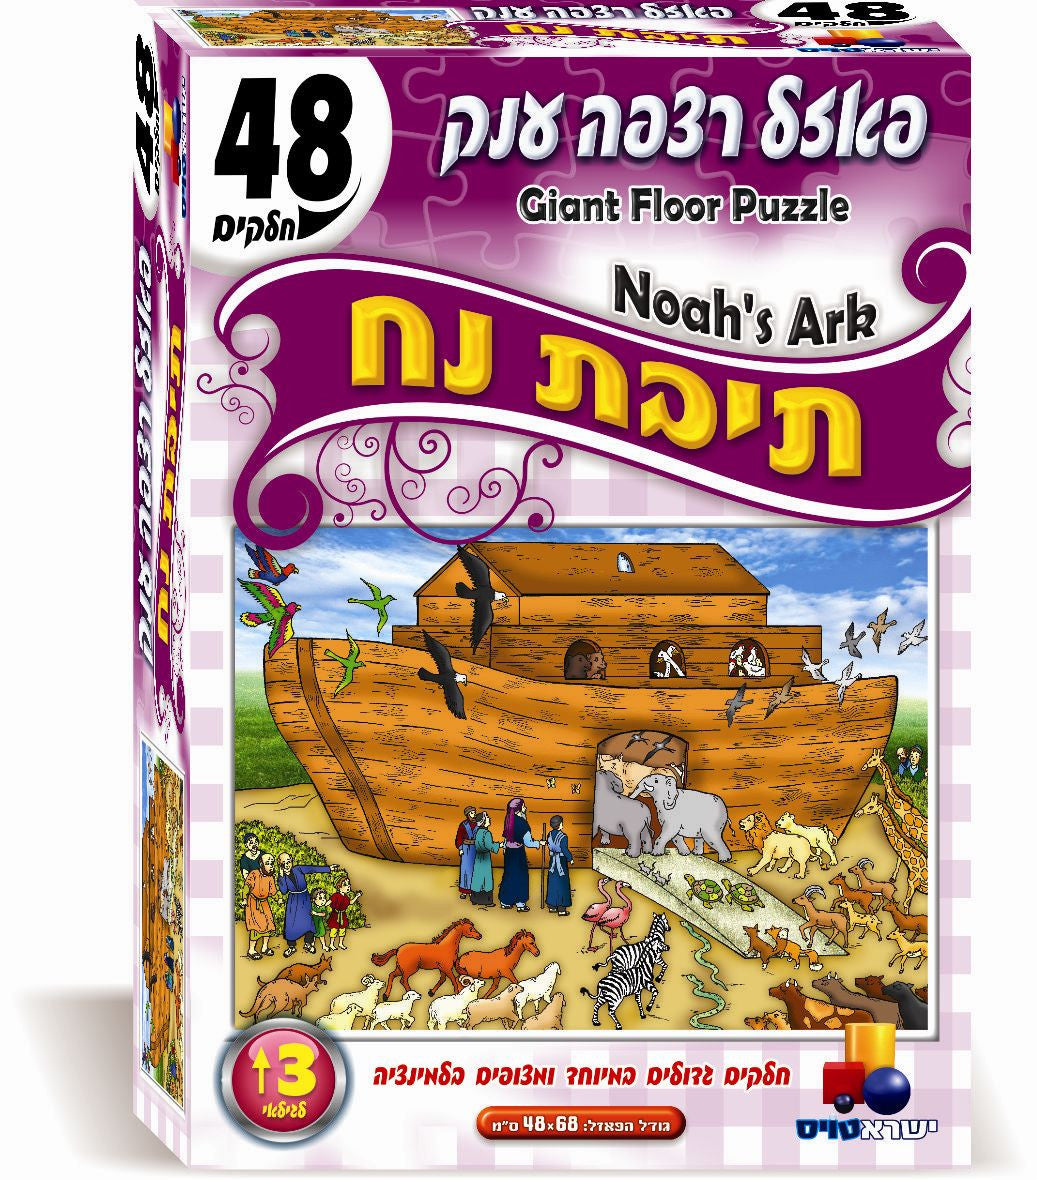 Giant Floor Puzzle - Noah's Ark